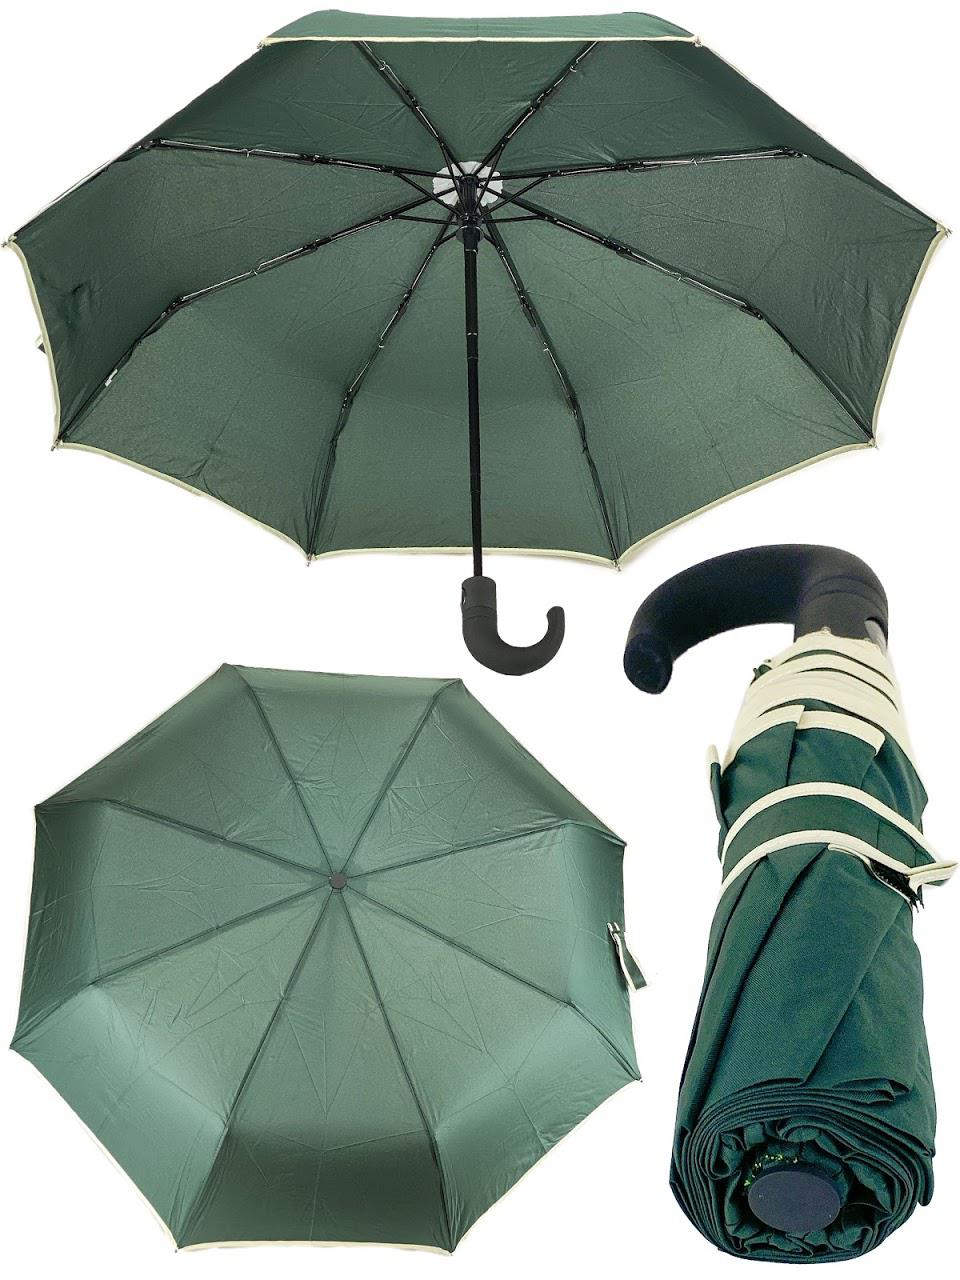 Купить мужской зонтик. Зонт складной. Зонт мужской. Зонт автомат. Зонт складной автомат.